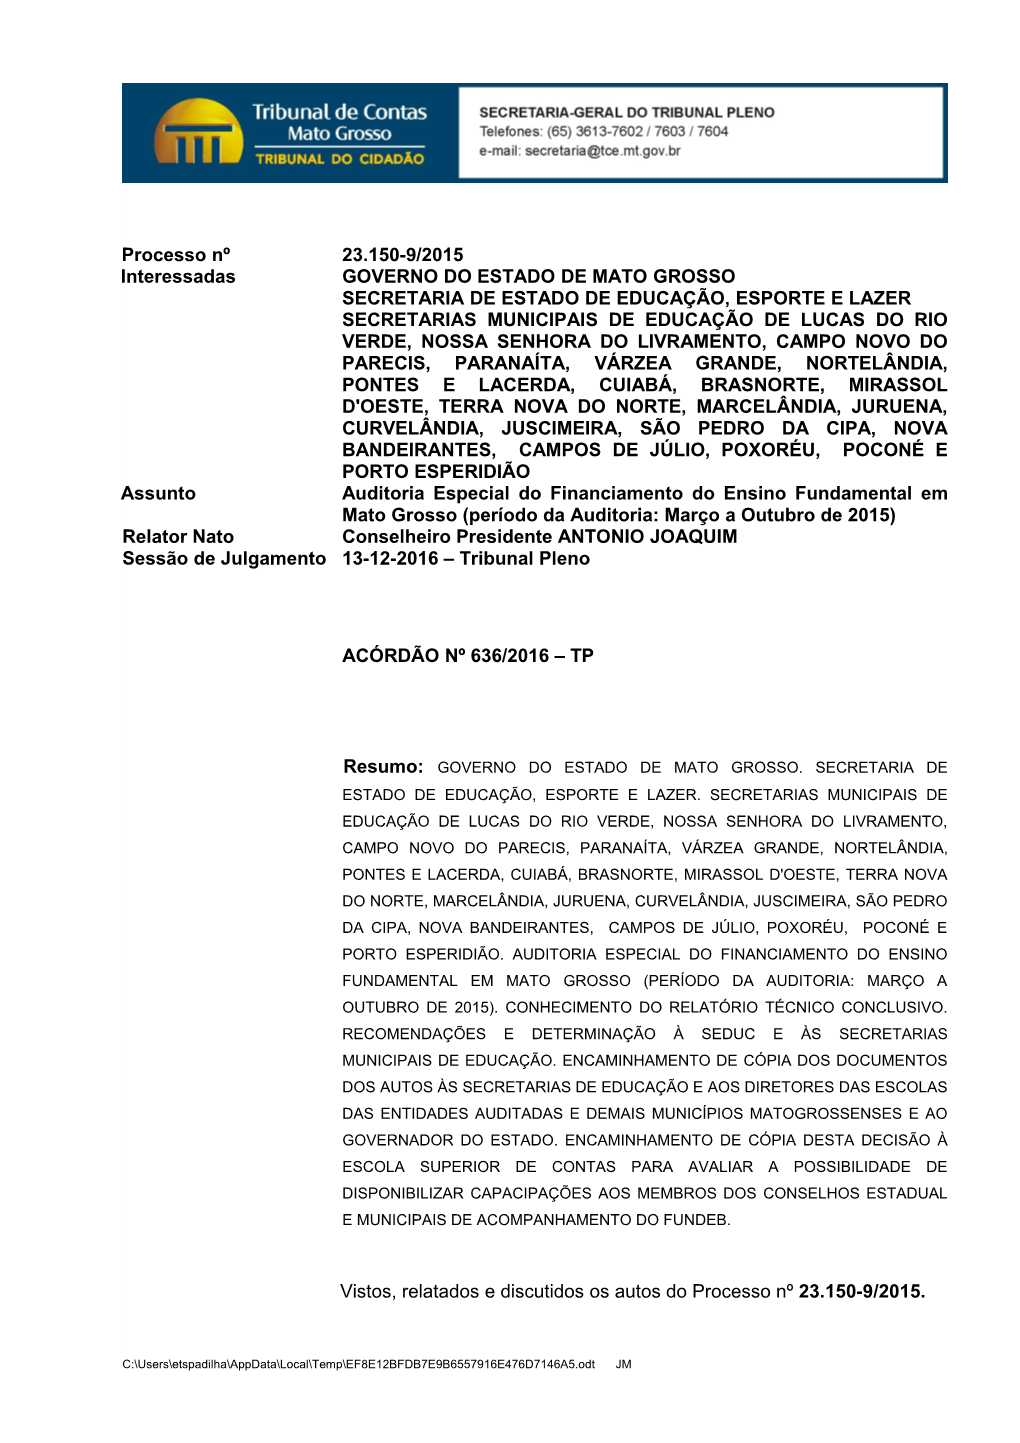 Processo Nº 23.150-9/2015 Interessadas GOVERNO DO